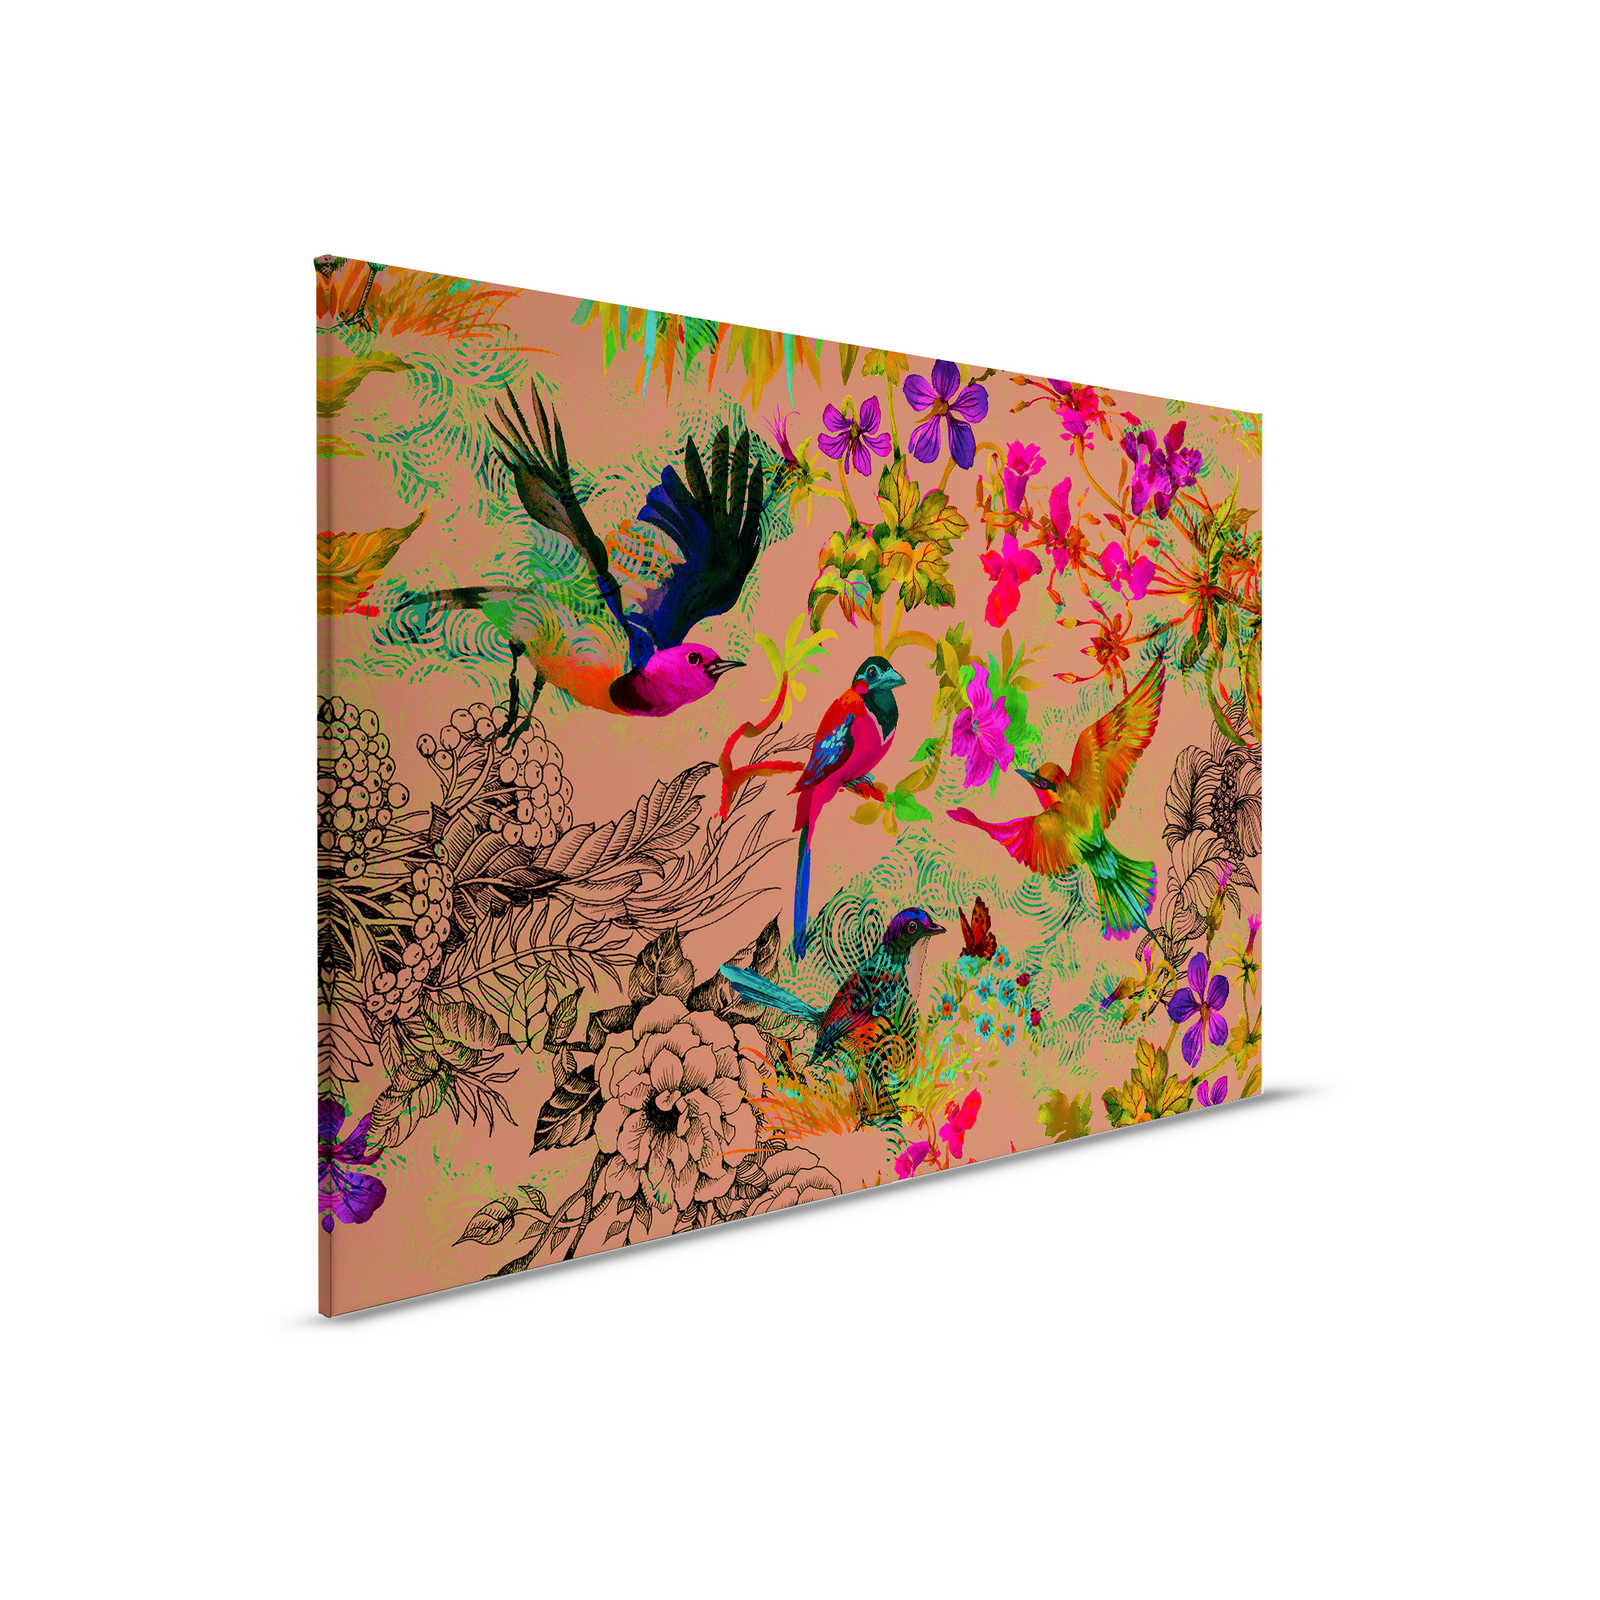 Vogel Leinwandbild im bunten Collage Stil – 0,90 m x 0,60 m
